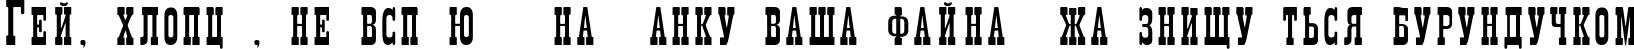 Пример написания шрифтом Decree Narrow текста на украинском